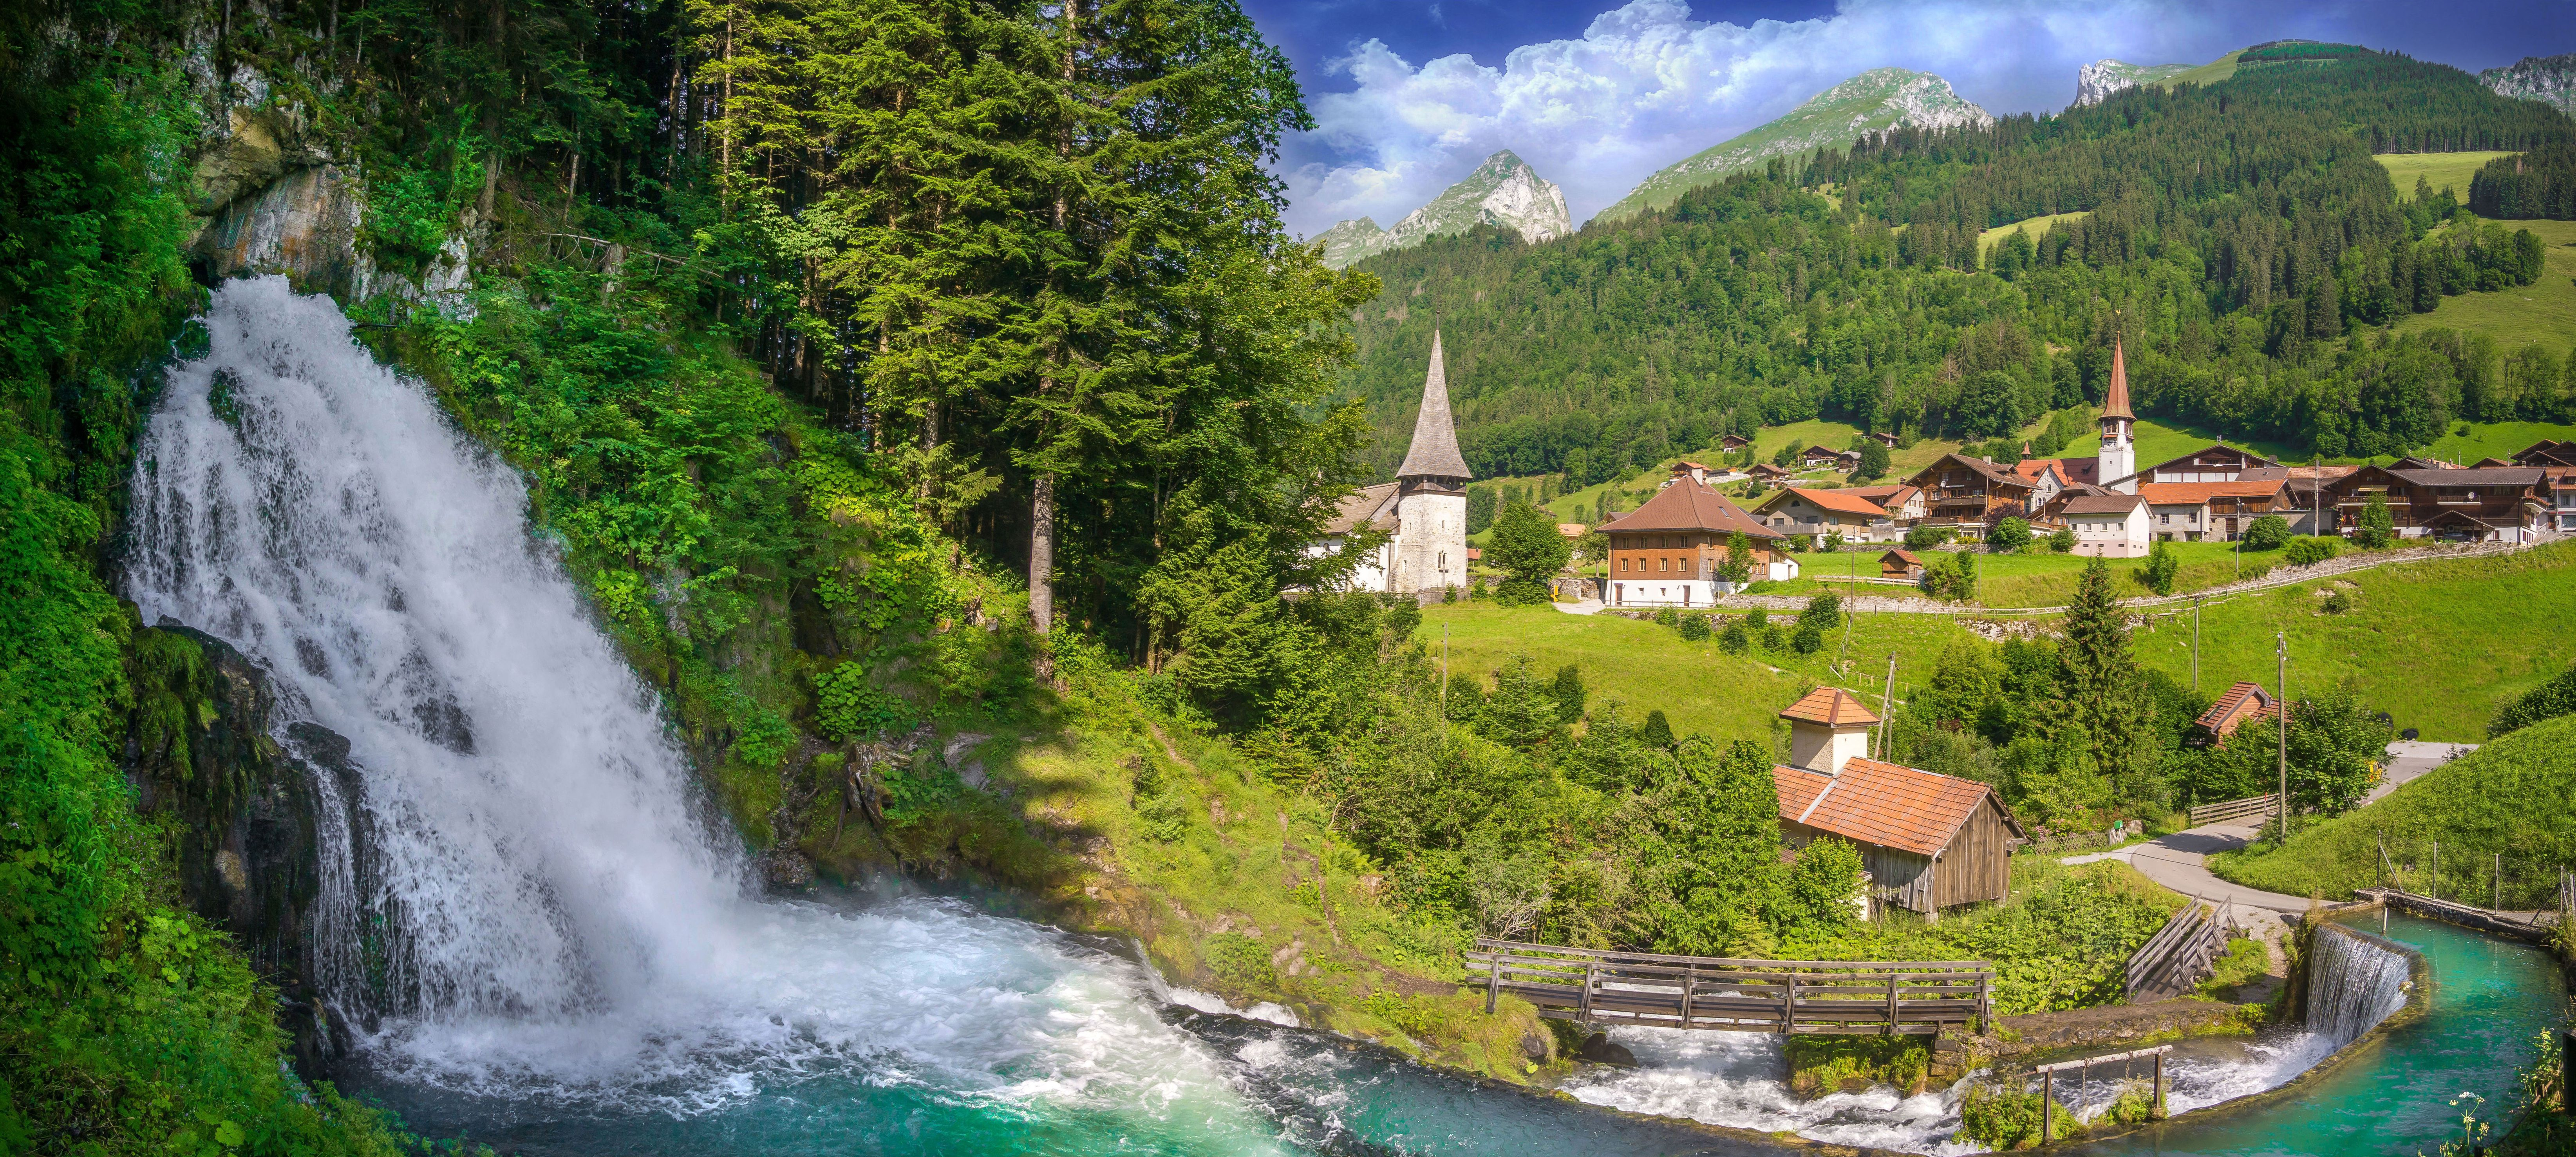 Деревня в Швейцарии рядом с водопадом